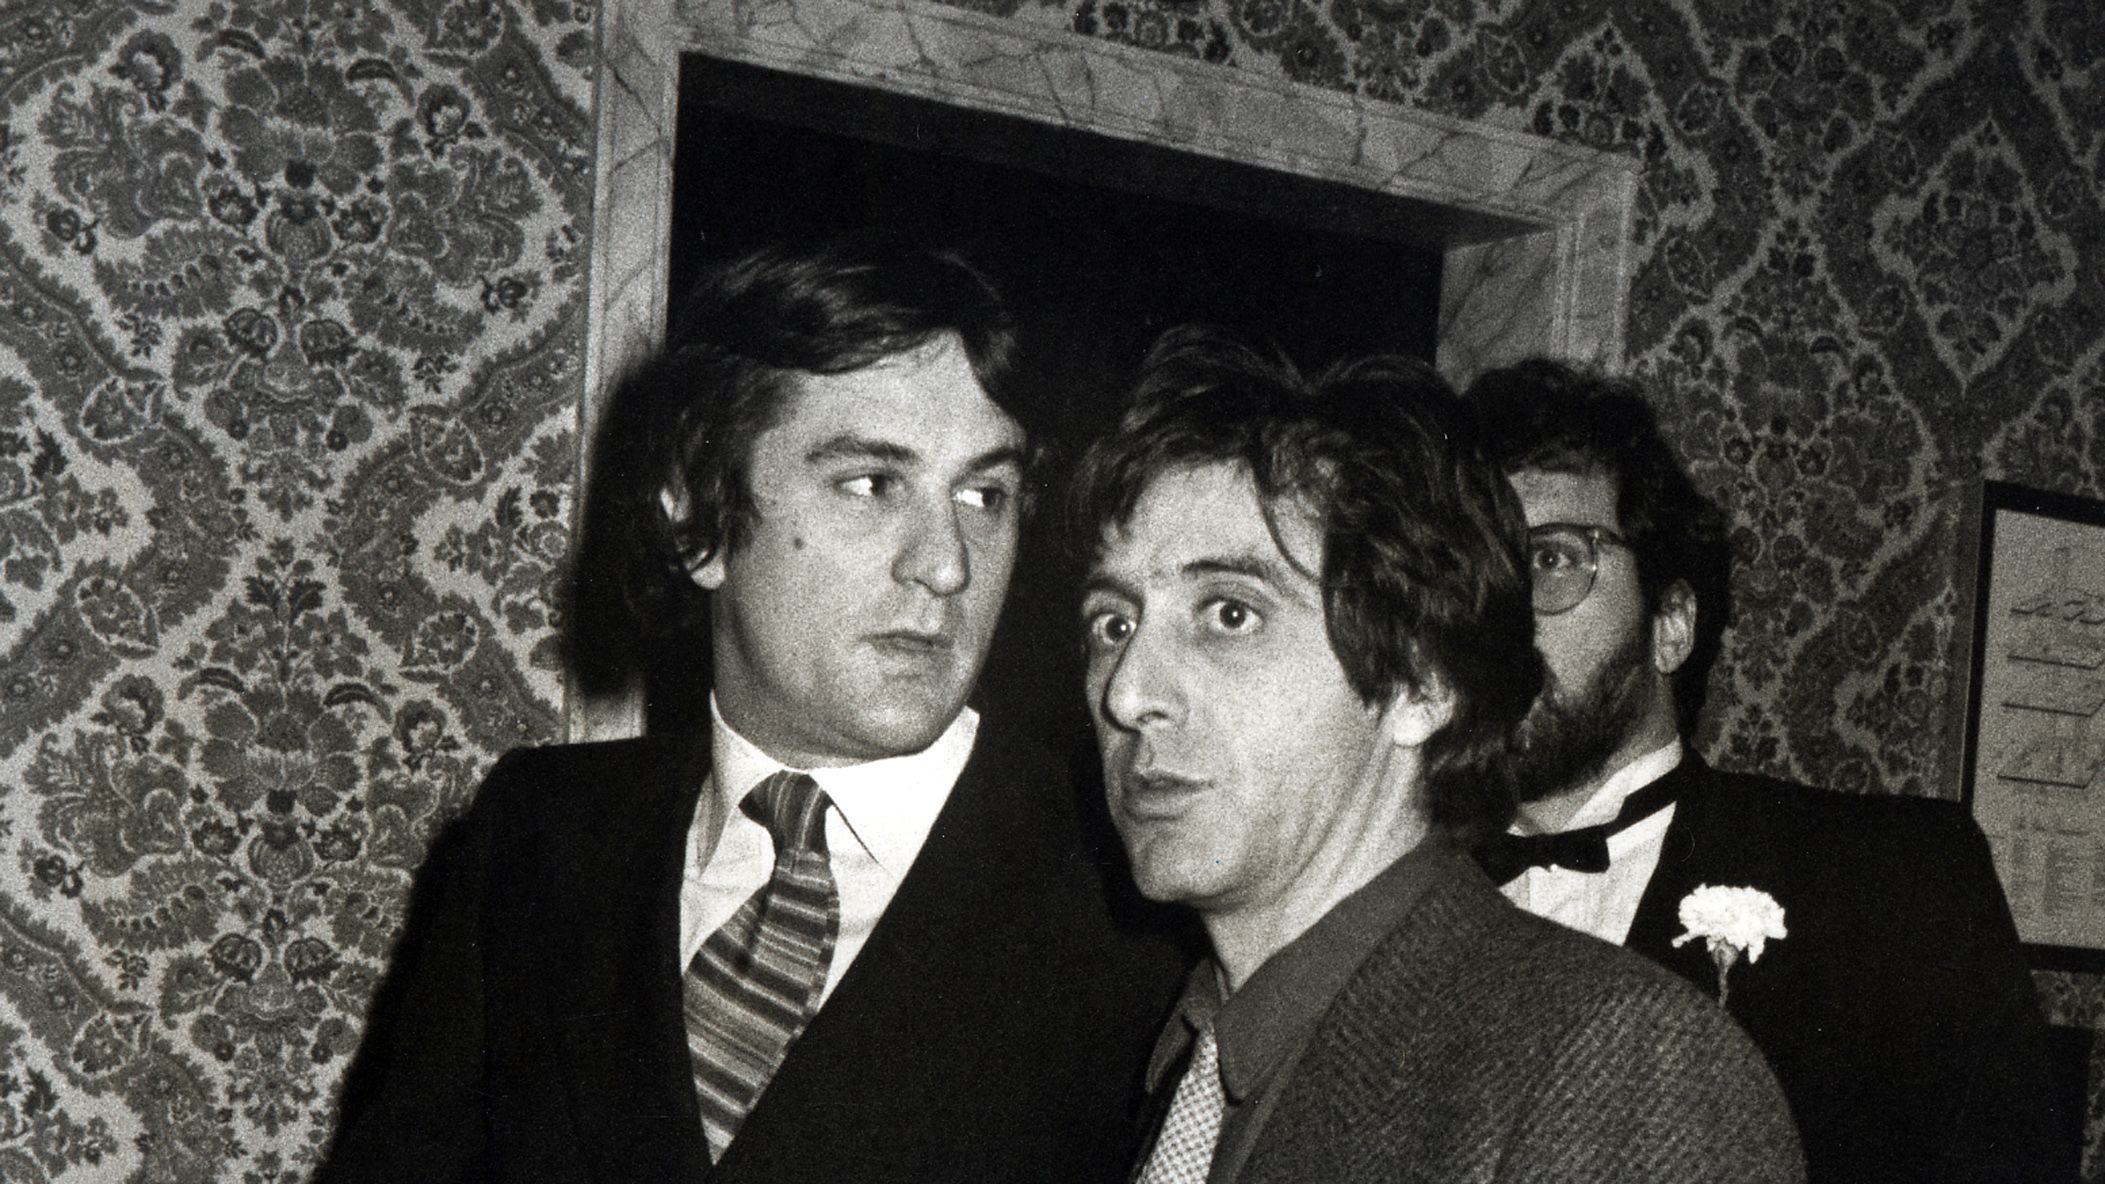 Twitter'S Robert De Niro And Al Pacino Hotness Debate Is Missing The Point